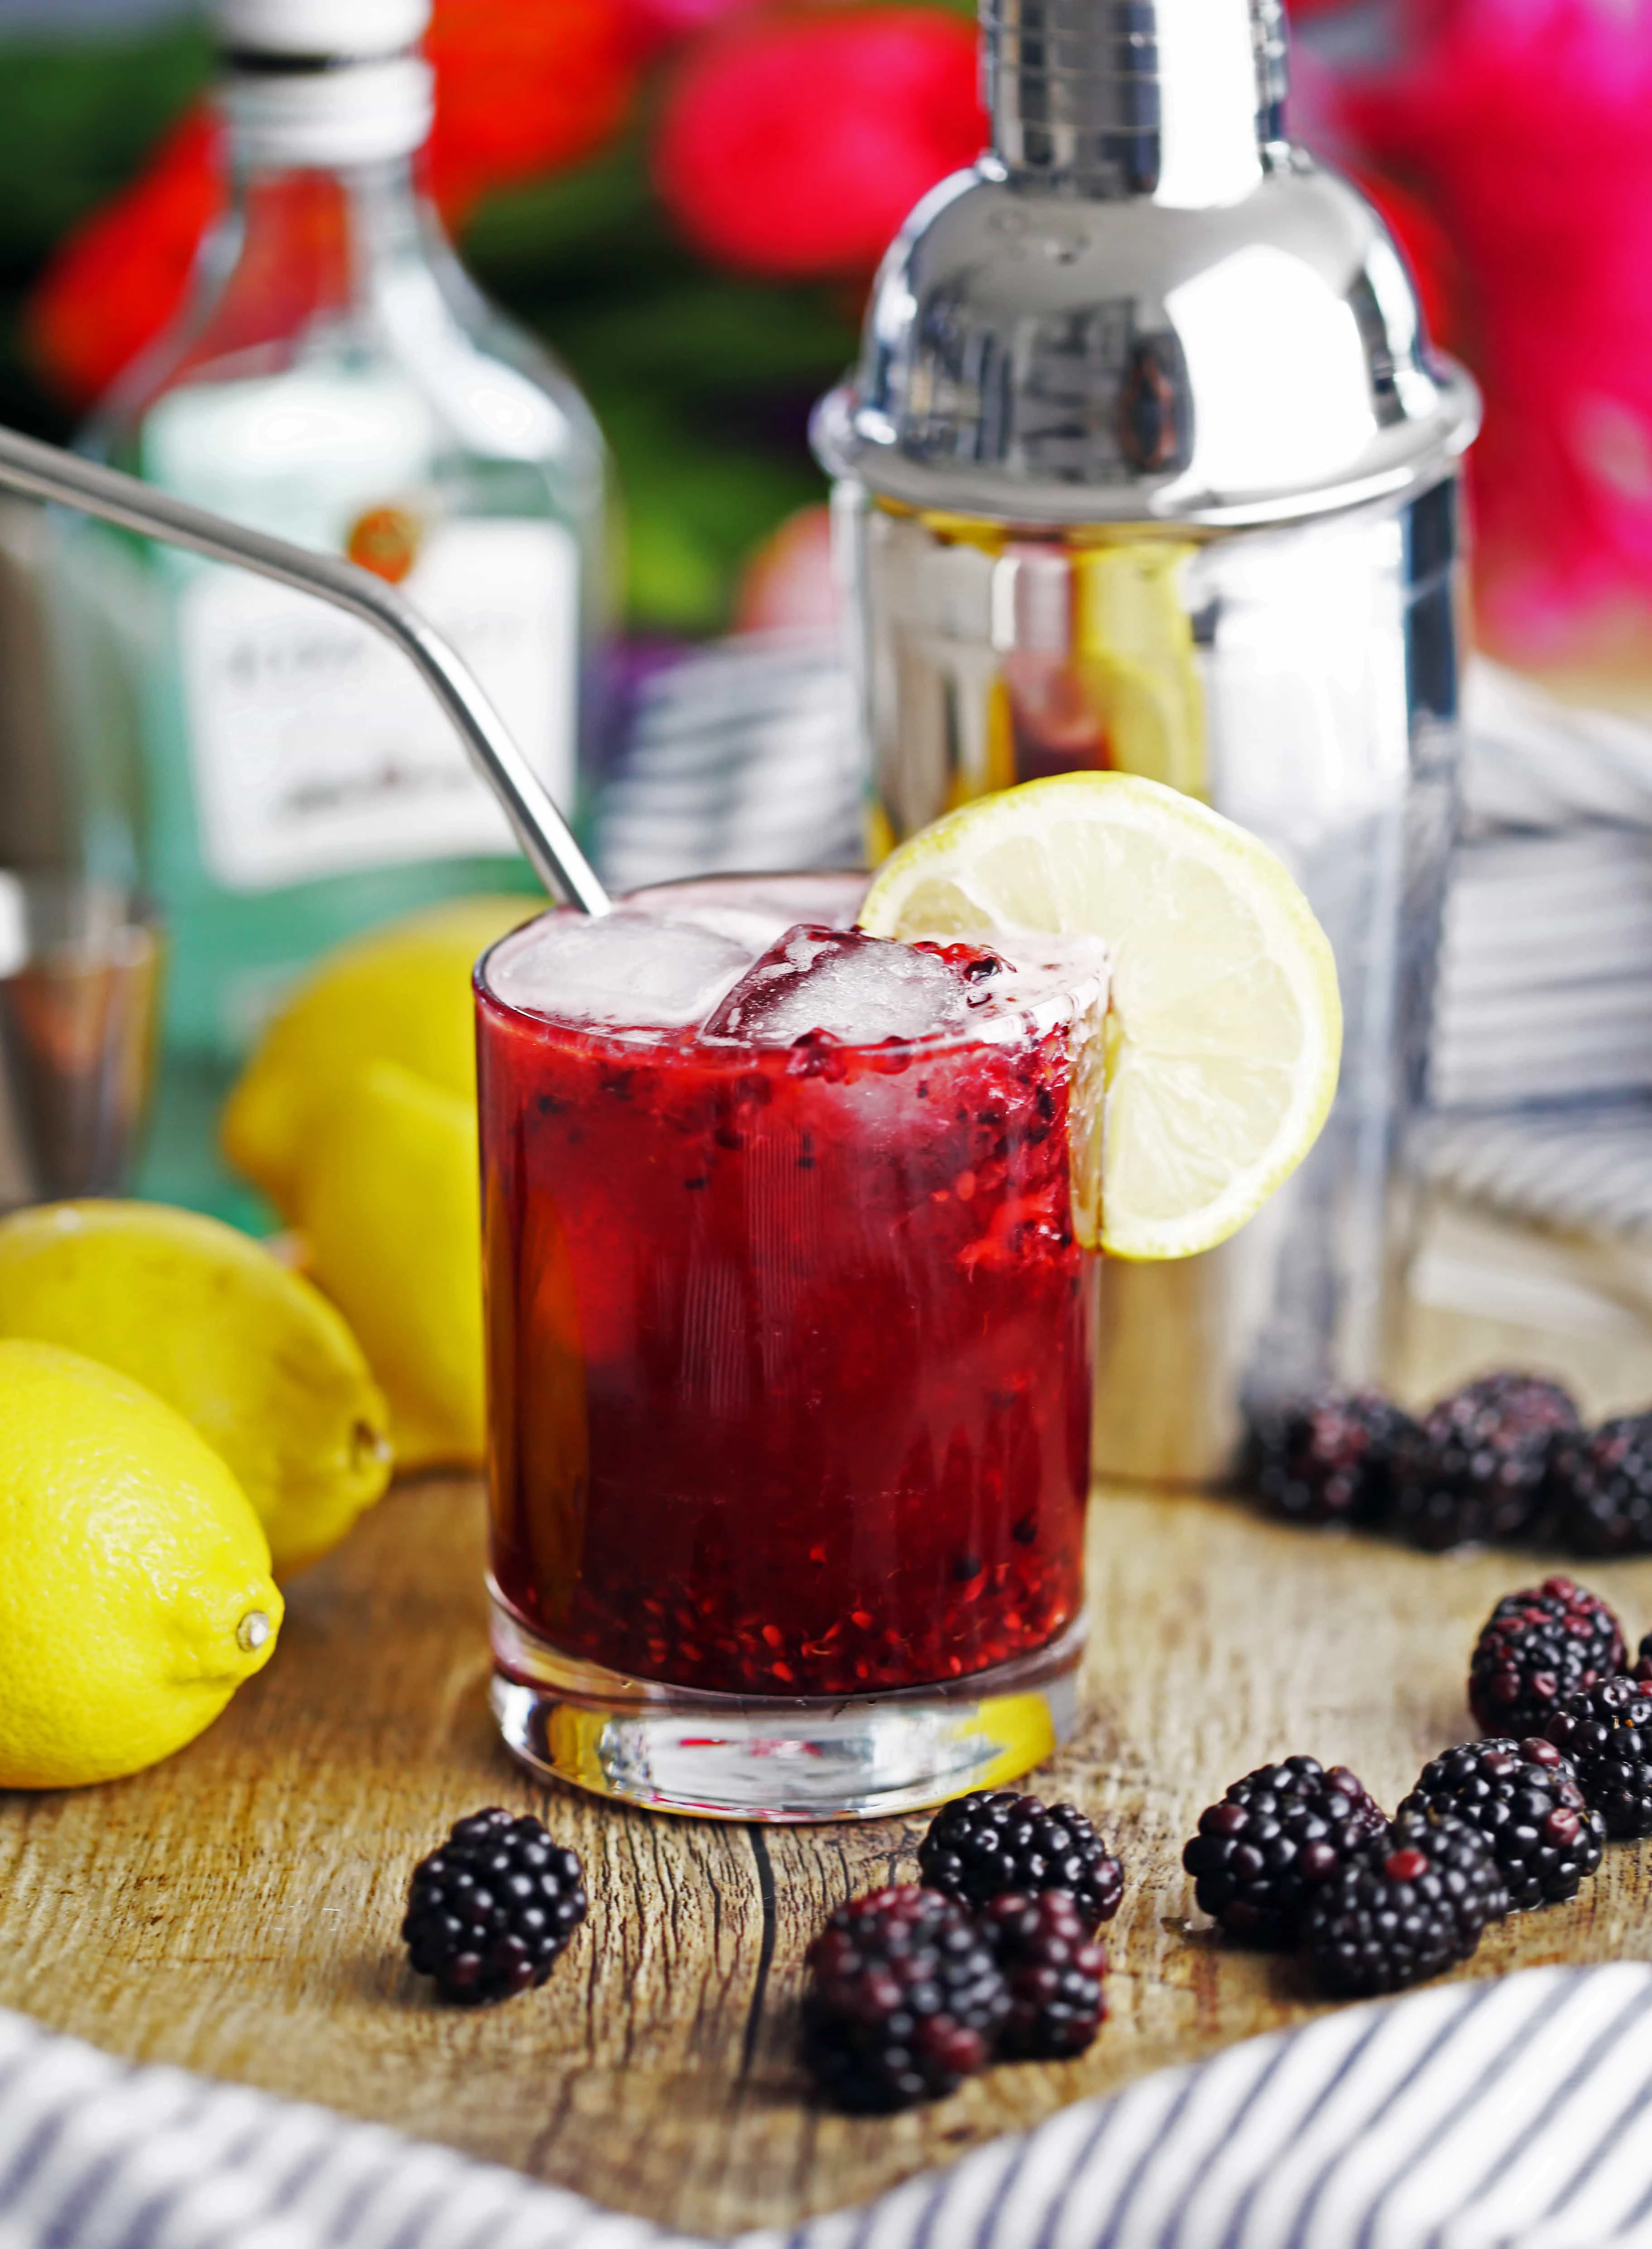 Blackberry Lemon Smash drink in a glass surrounded by fresh blackberries and lemons.